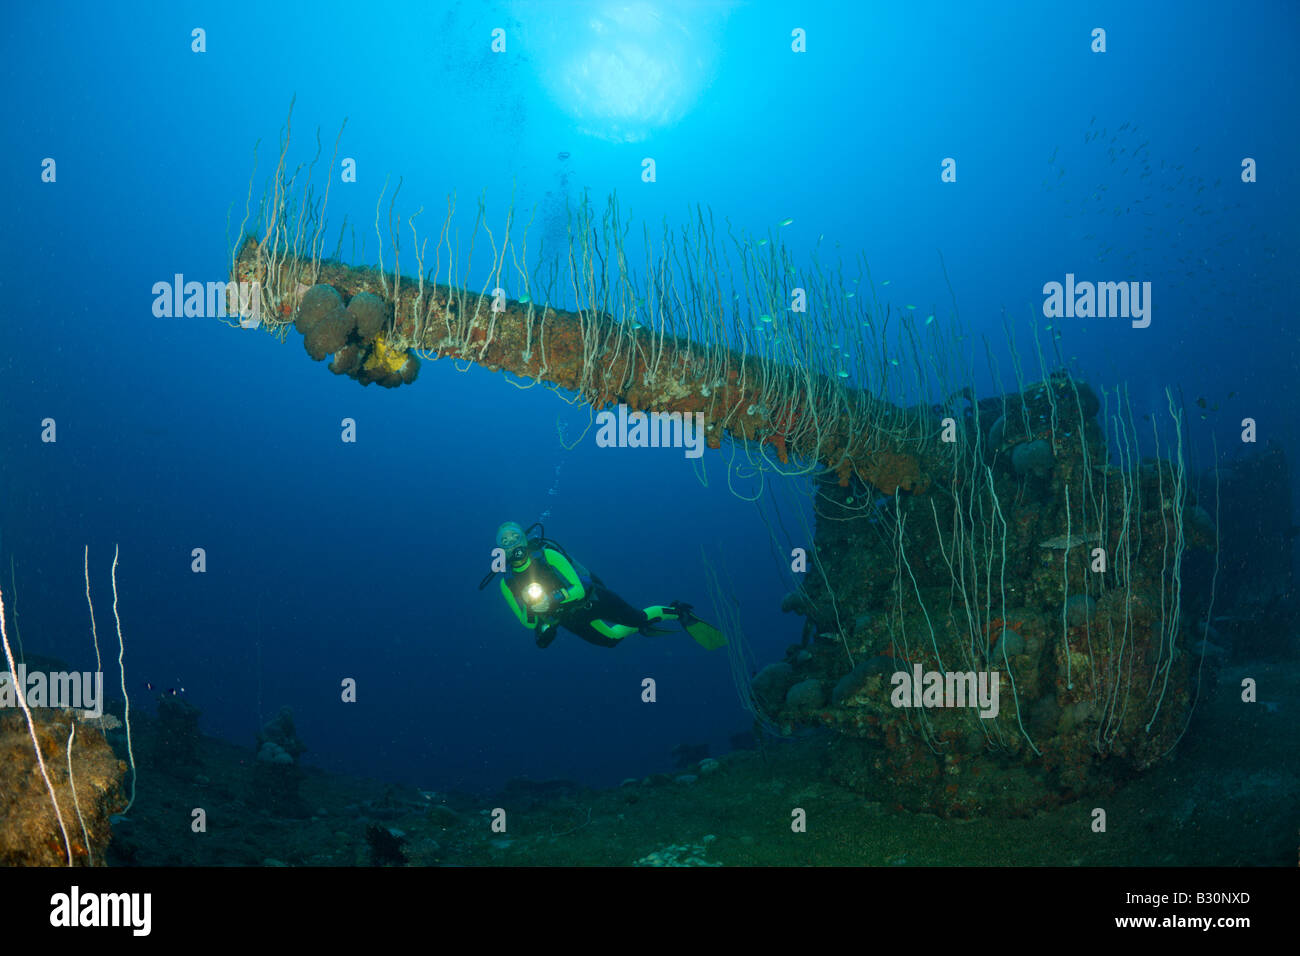 Taucher und 5-Zoll-Geschütz der USS Carlisle Angriff Transporter Marshallinseln Bikini Atoll Mikronesien Pazifik Stockfoto